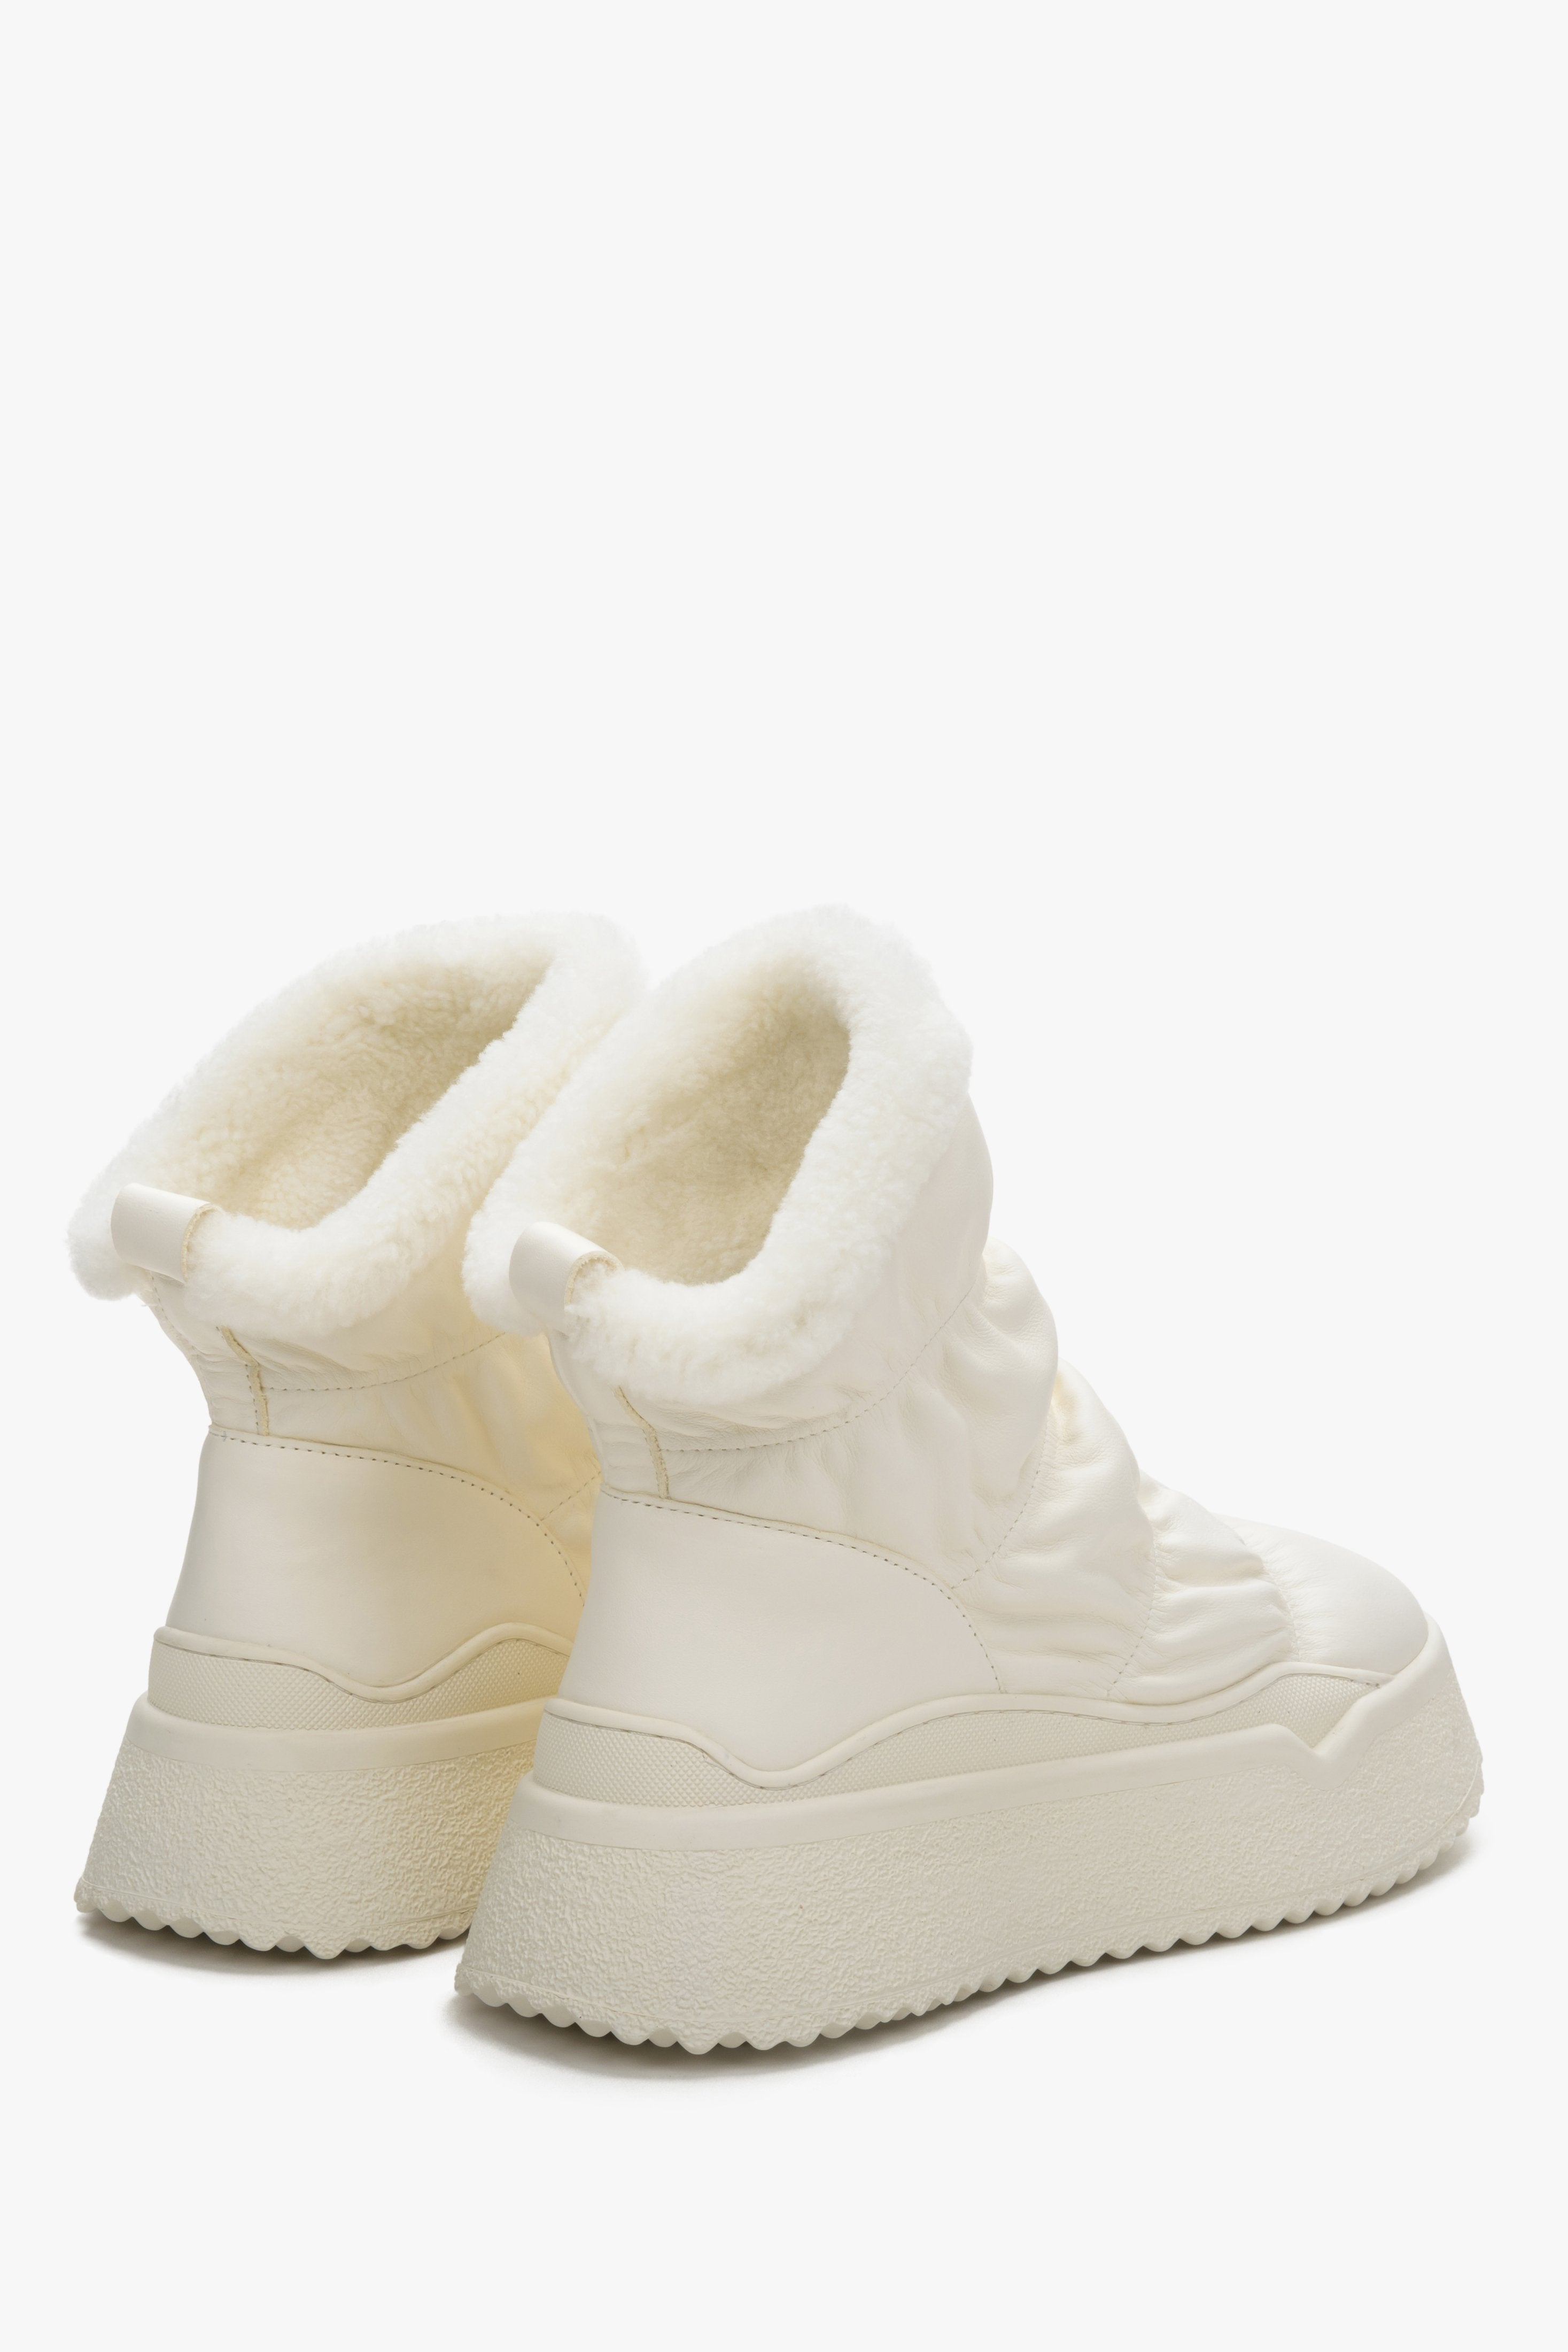 Damskie jasnobeżowe śniegowce ze skóry naturalnej z futrzanym wsadem marki Estro - zbliżenie na zapiętek i linię boczną buta.